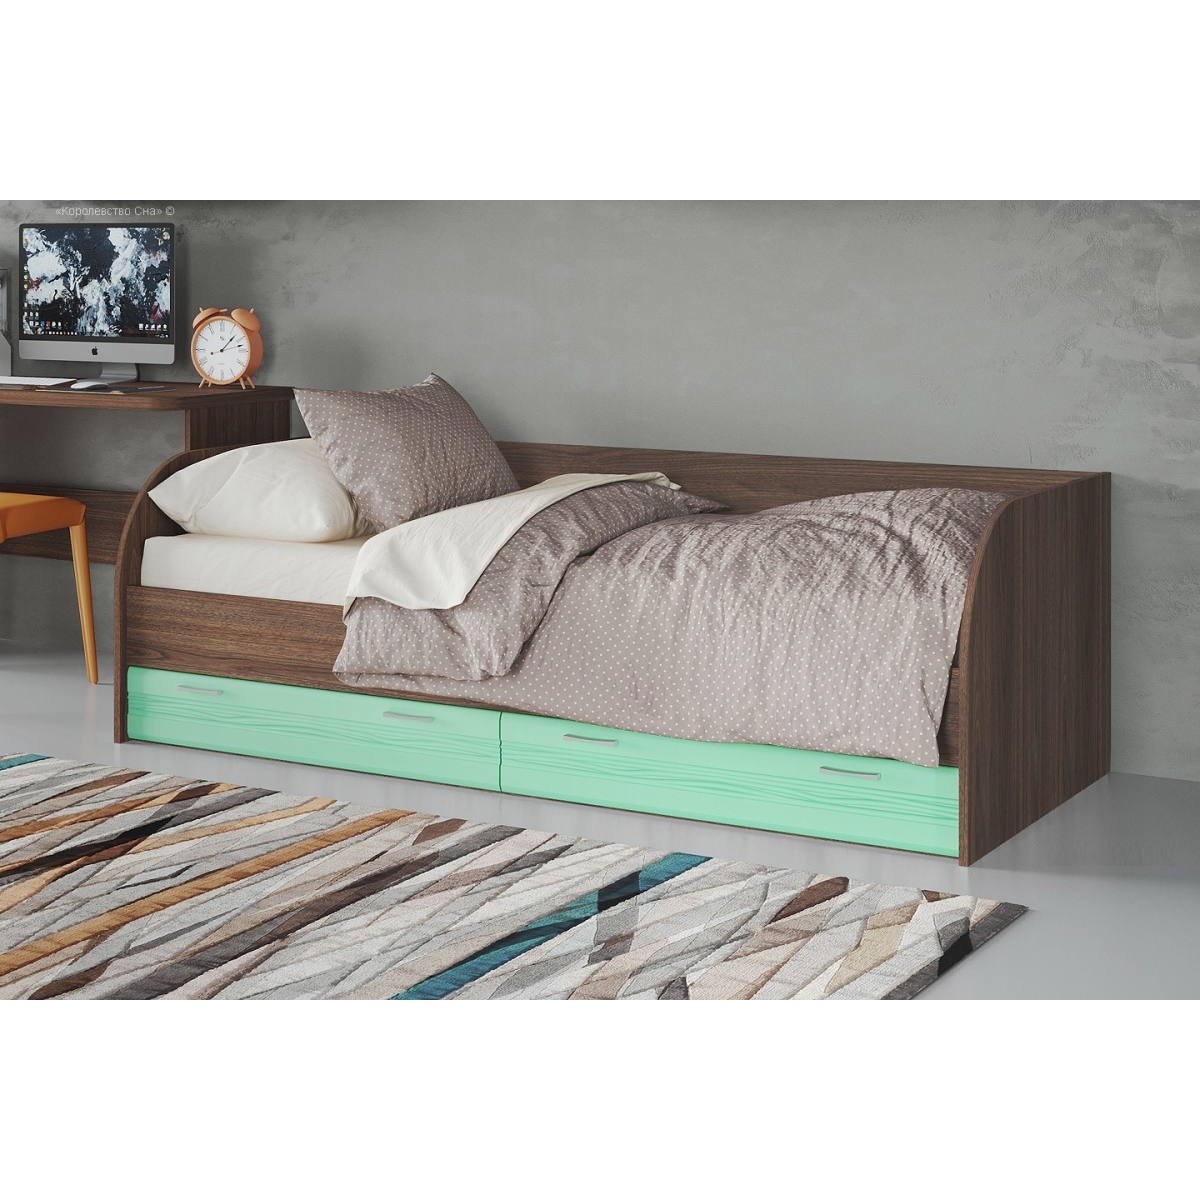 Кровать подростковая Лотос КР-804, цвет рэд фокс + зеленый